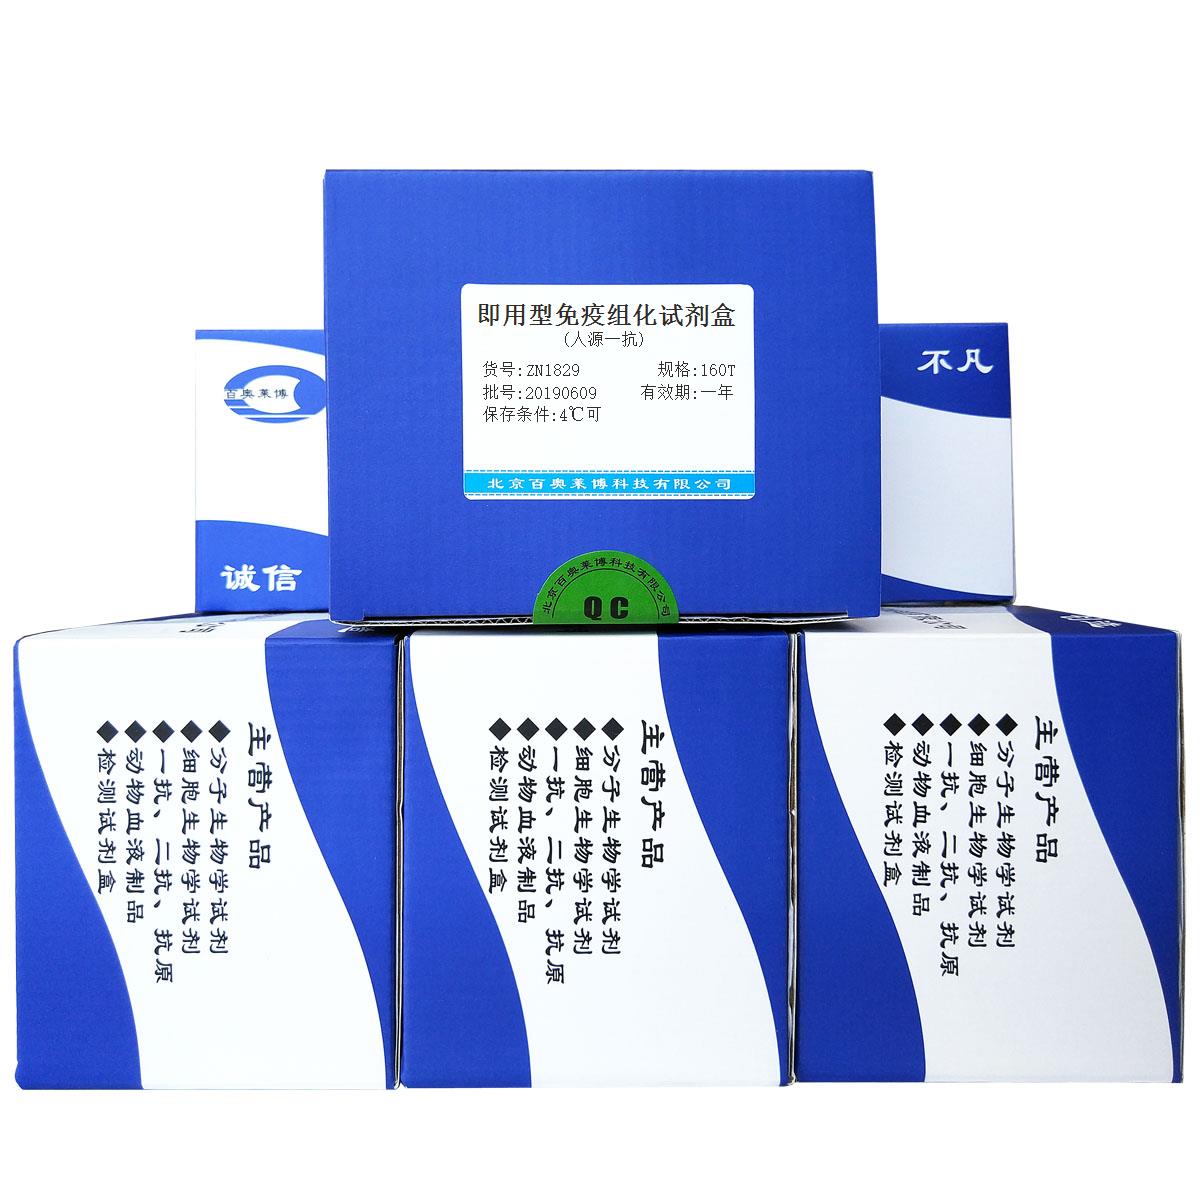 即用型免疫组化试剂盒(人源一抗)北京品牌